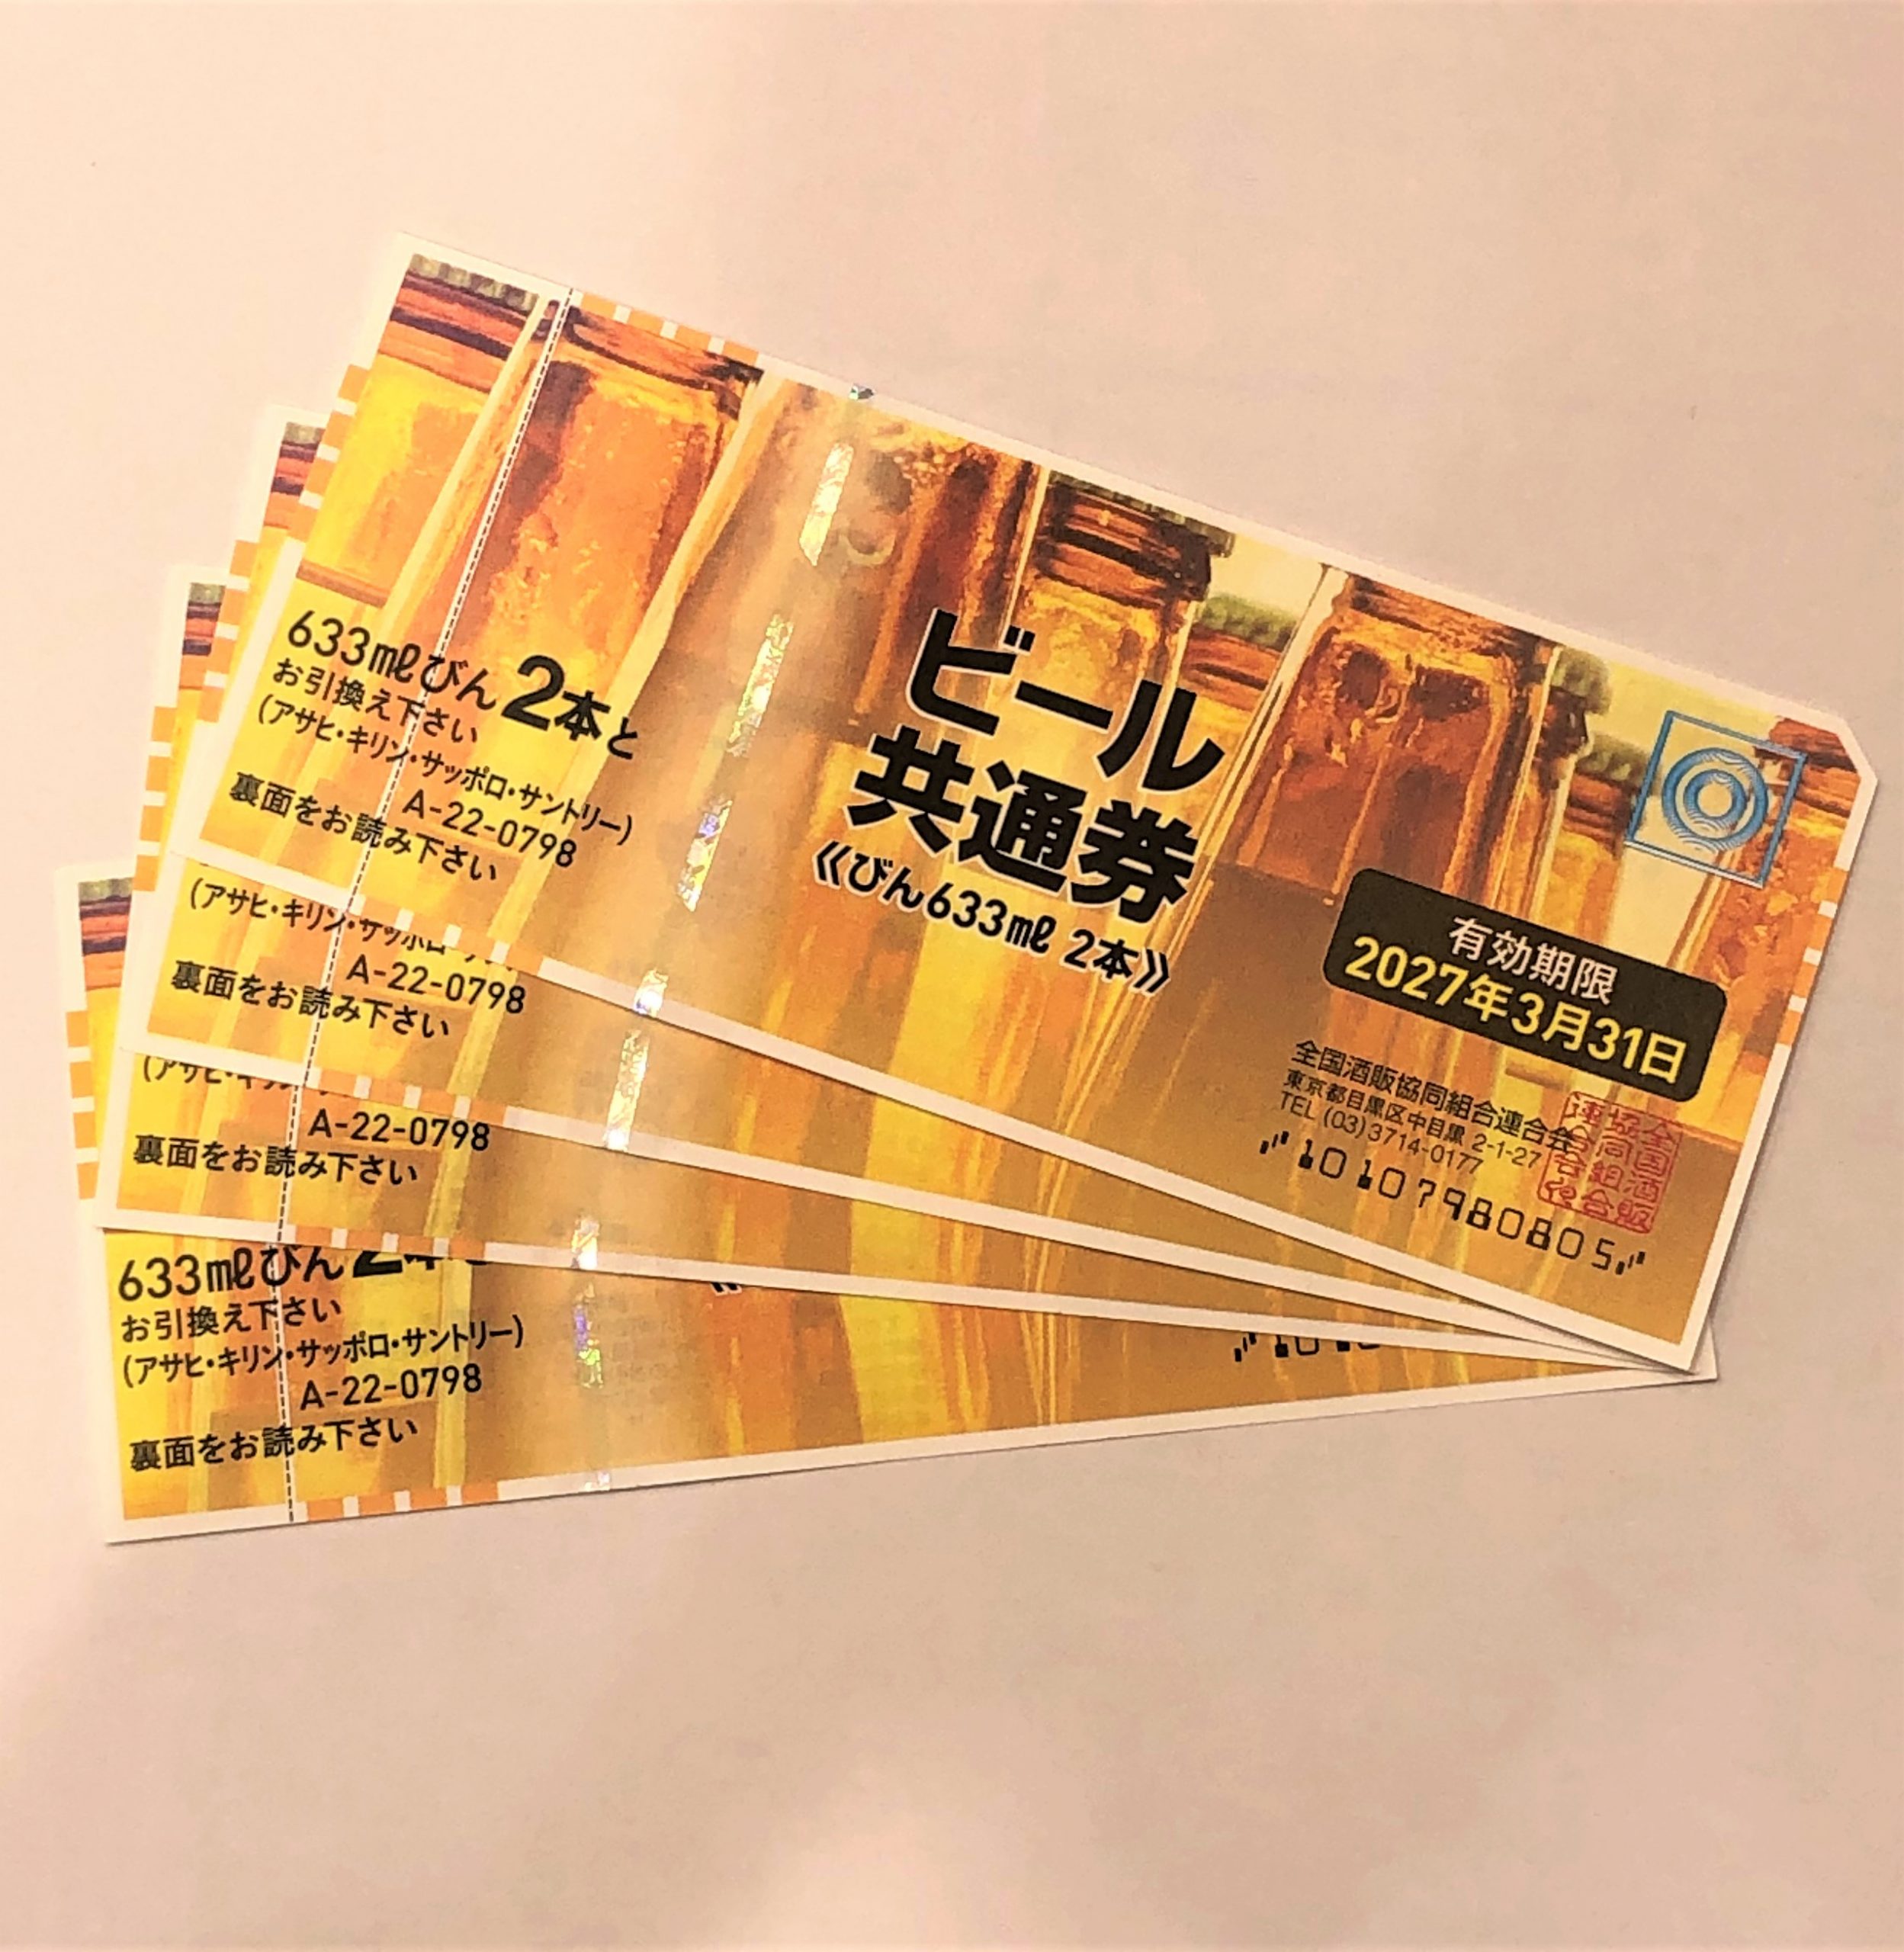 ビール共通券 798円 